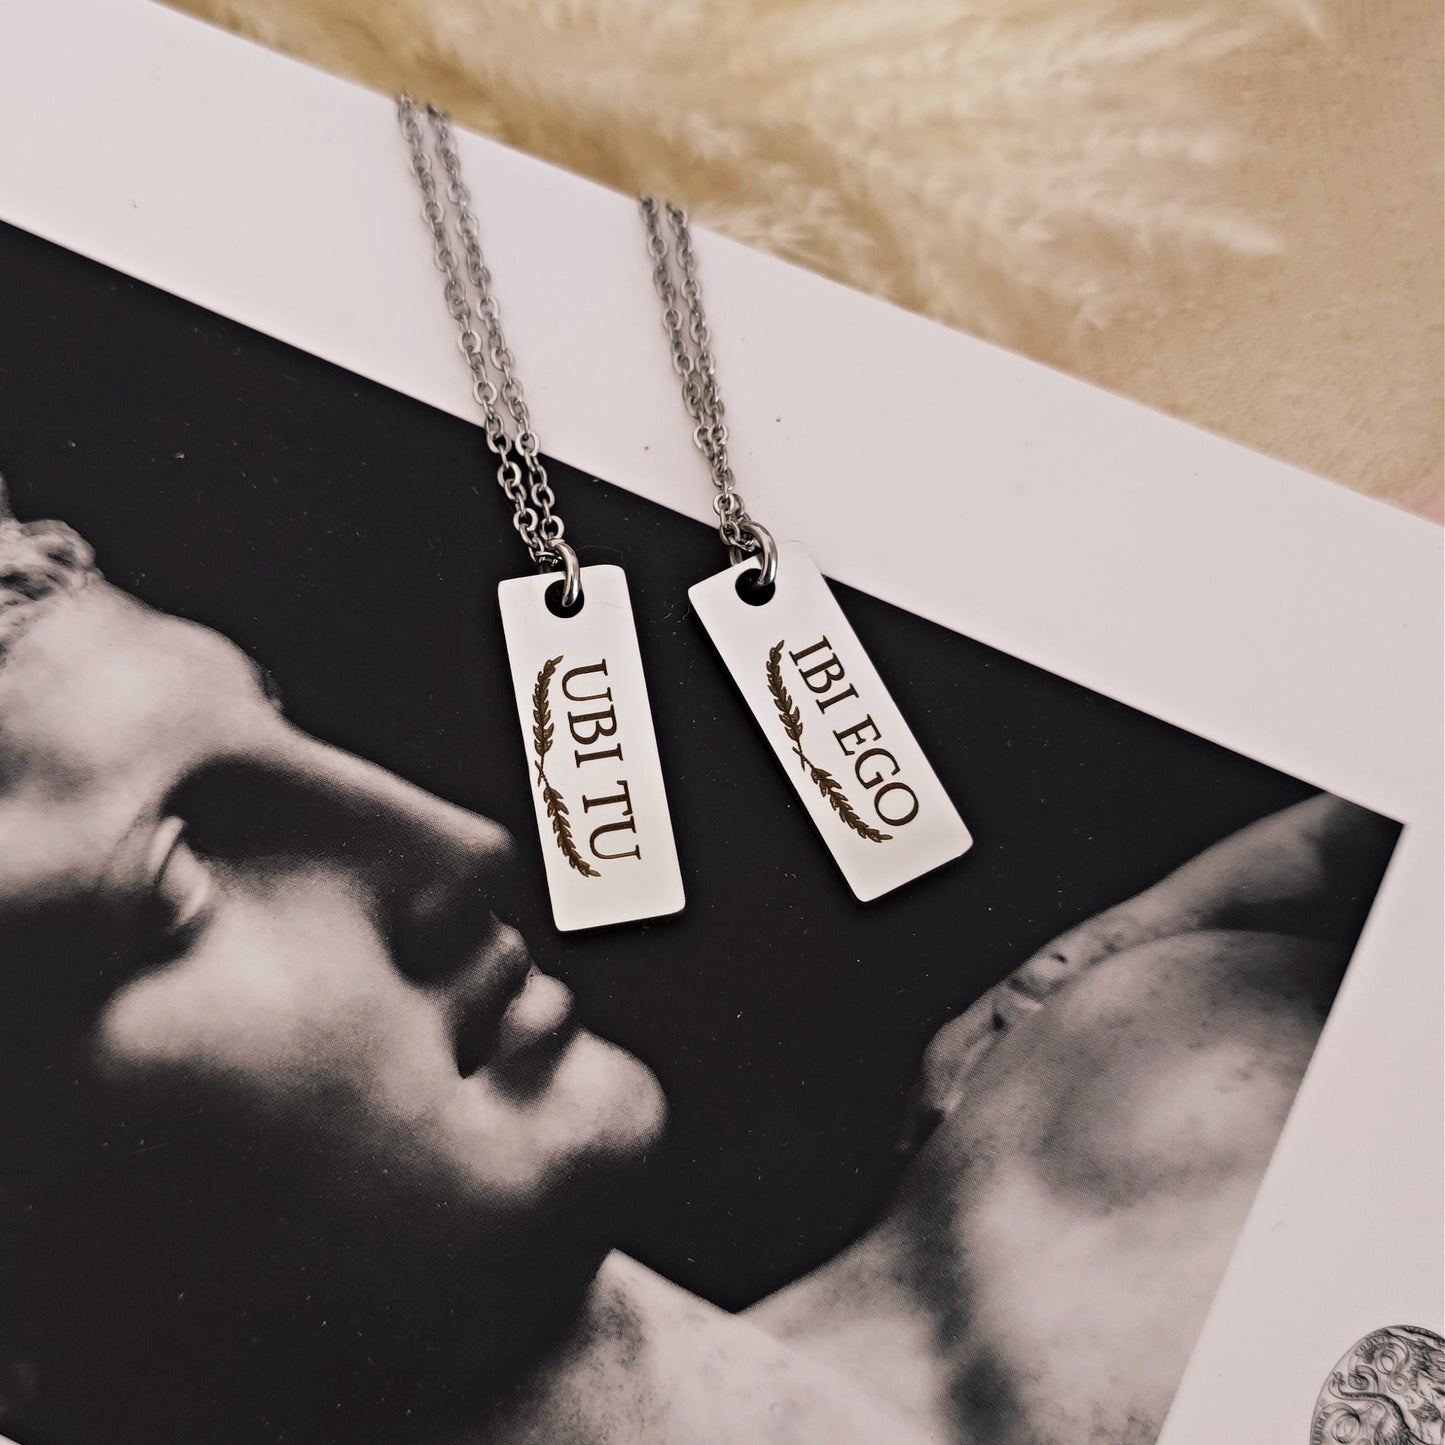 "Ubi tu, Ibi Ego" necklaces with engraving